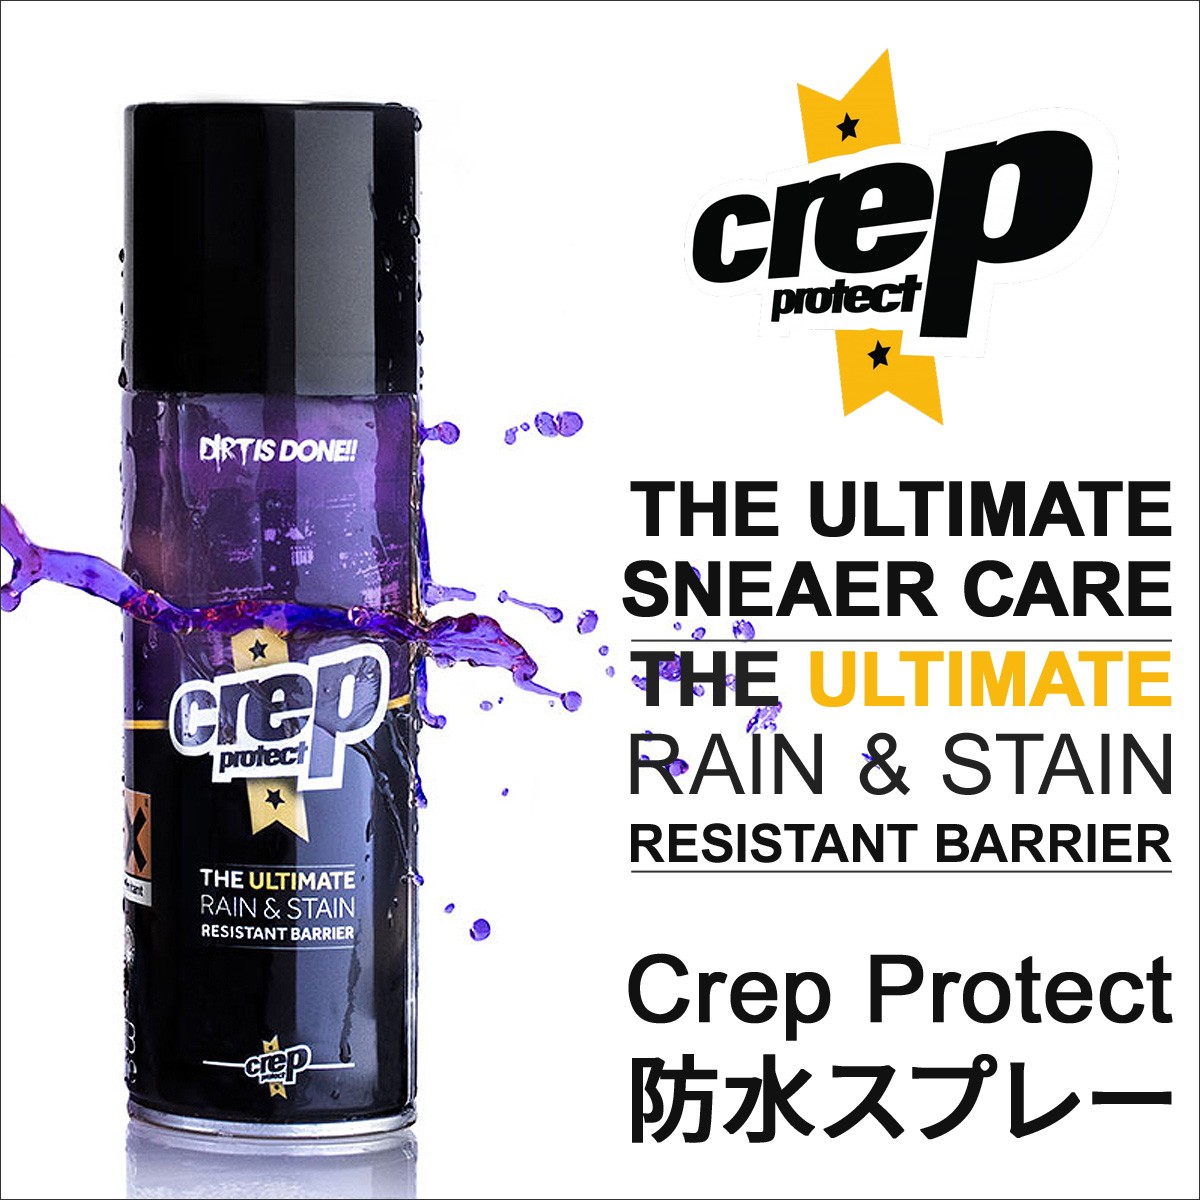 CREP PROTECT クレップ プロテクト 防水スプレー シューケア シューズケア用品 6065-2904